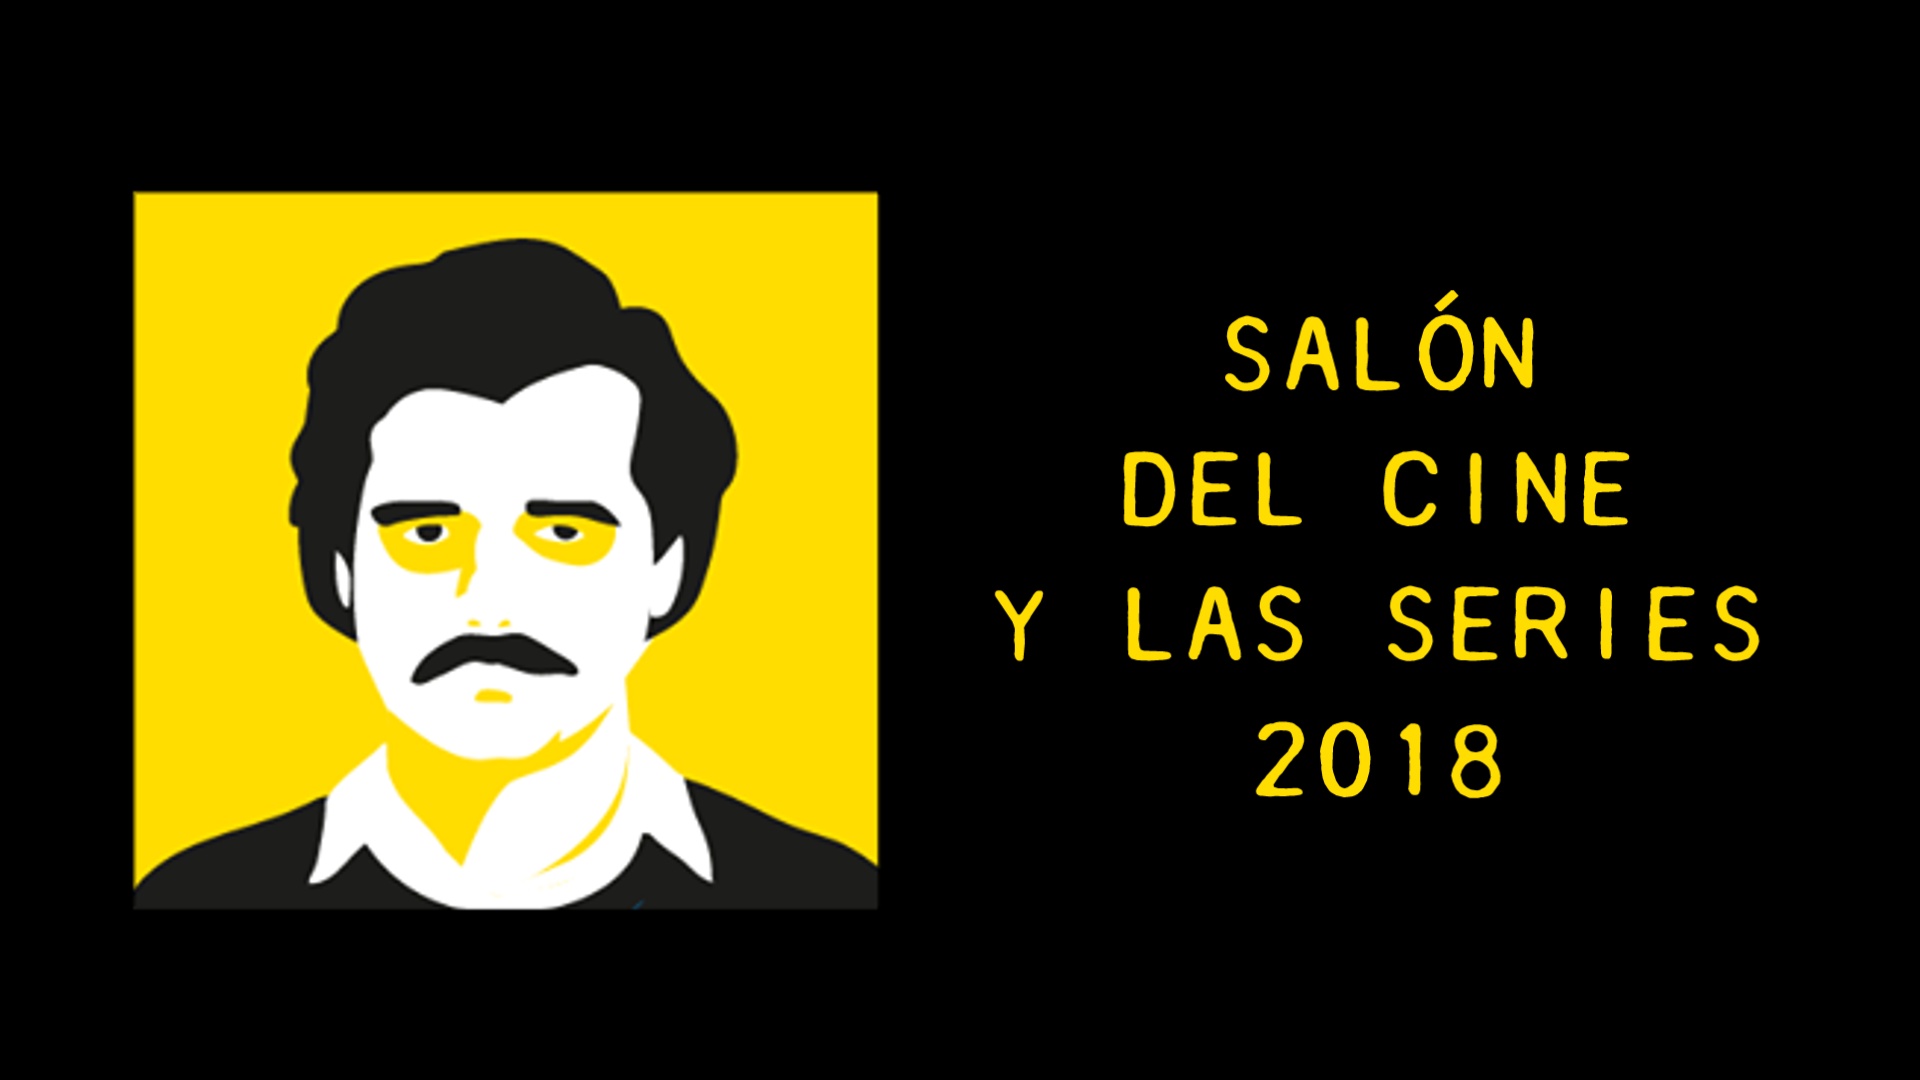 SALÓN DEL CINE Y LAS SERIES 2018